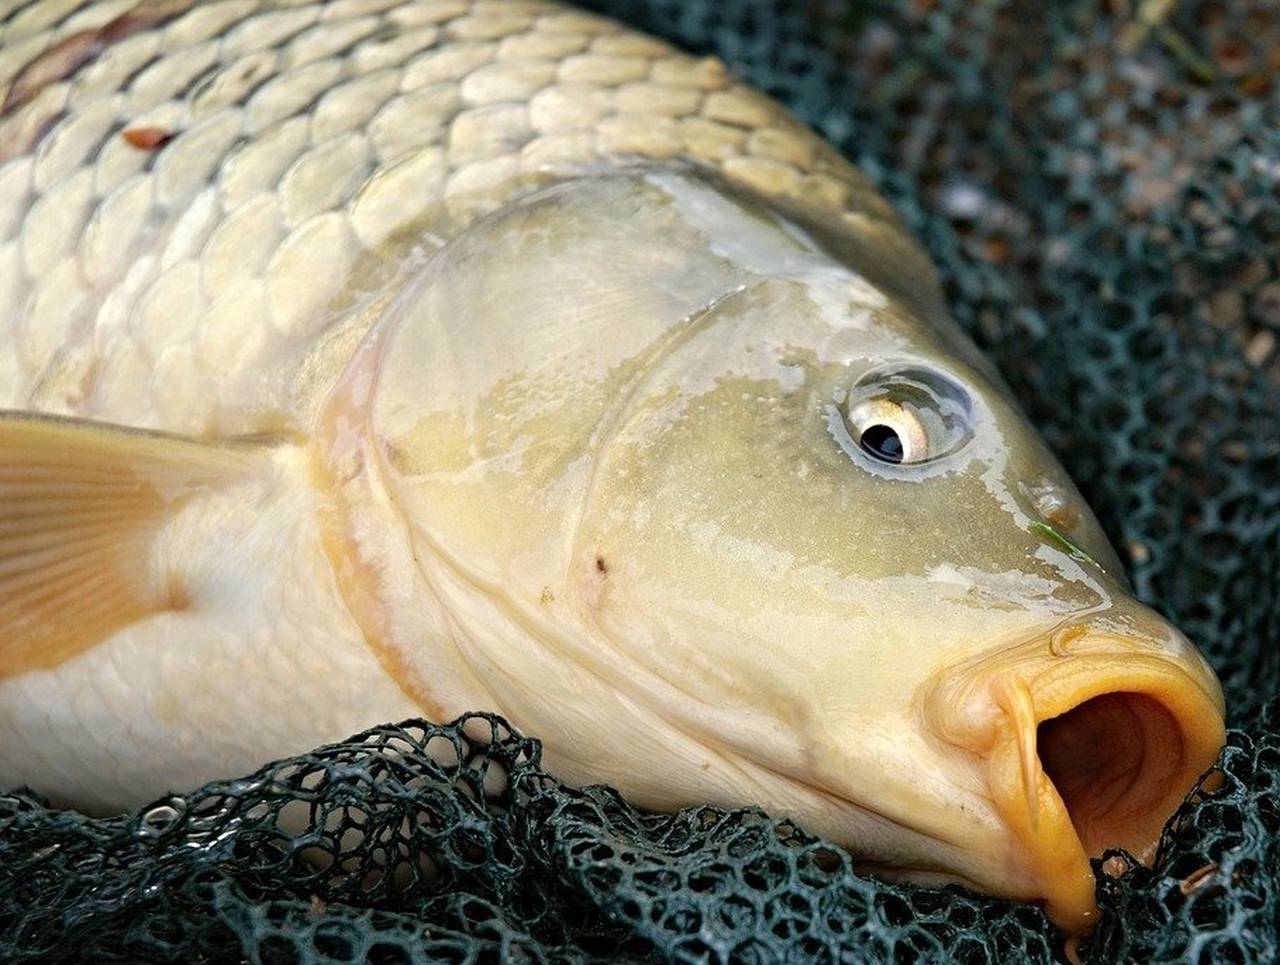 Percheziții: Pește furat și vândut ilegal în piețele din Călărași și București